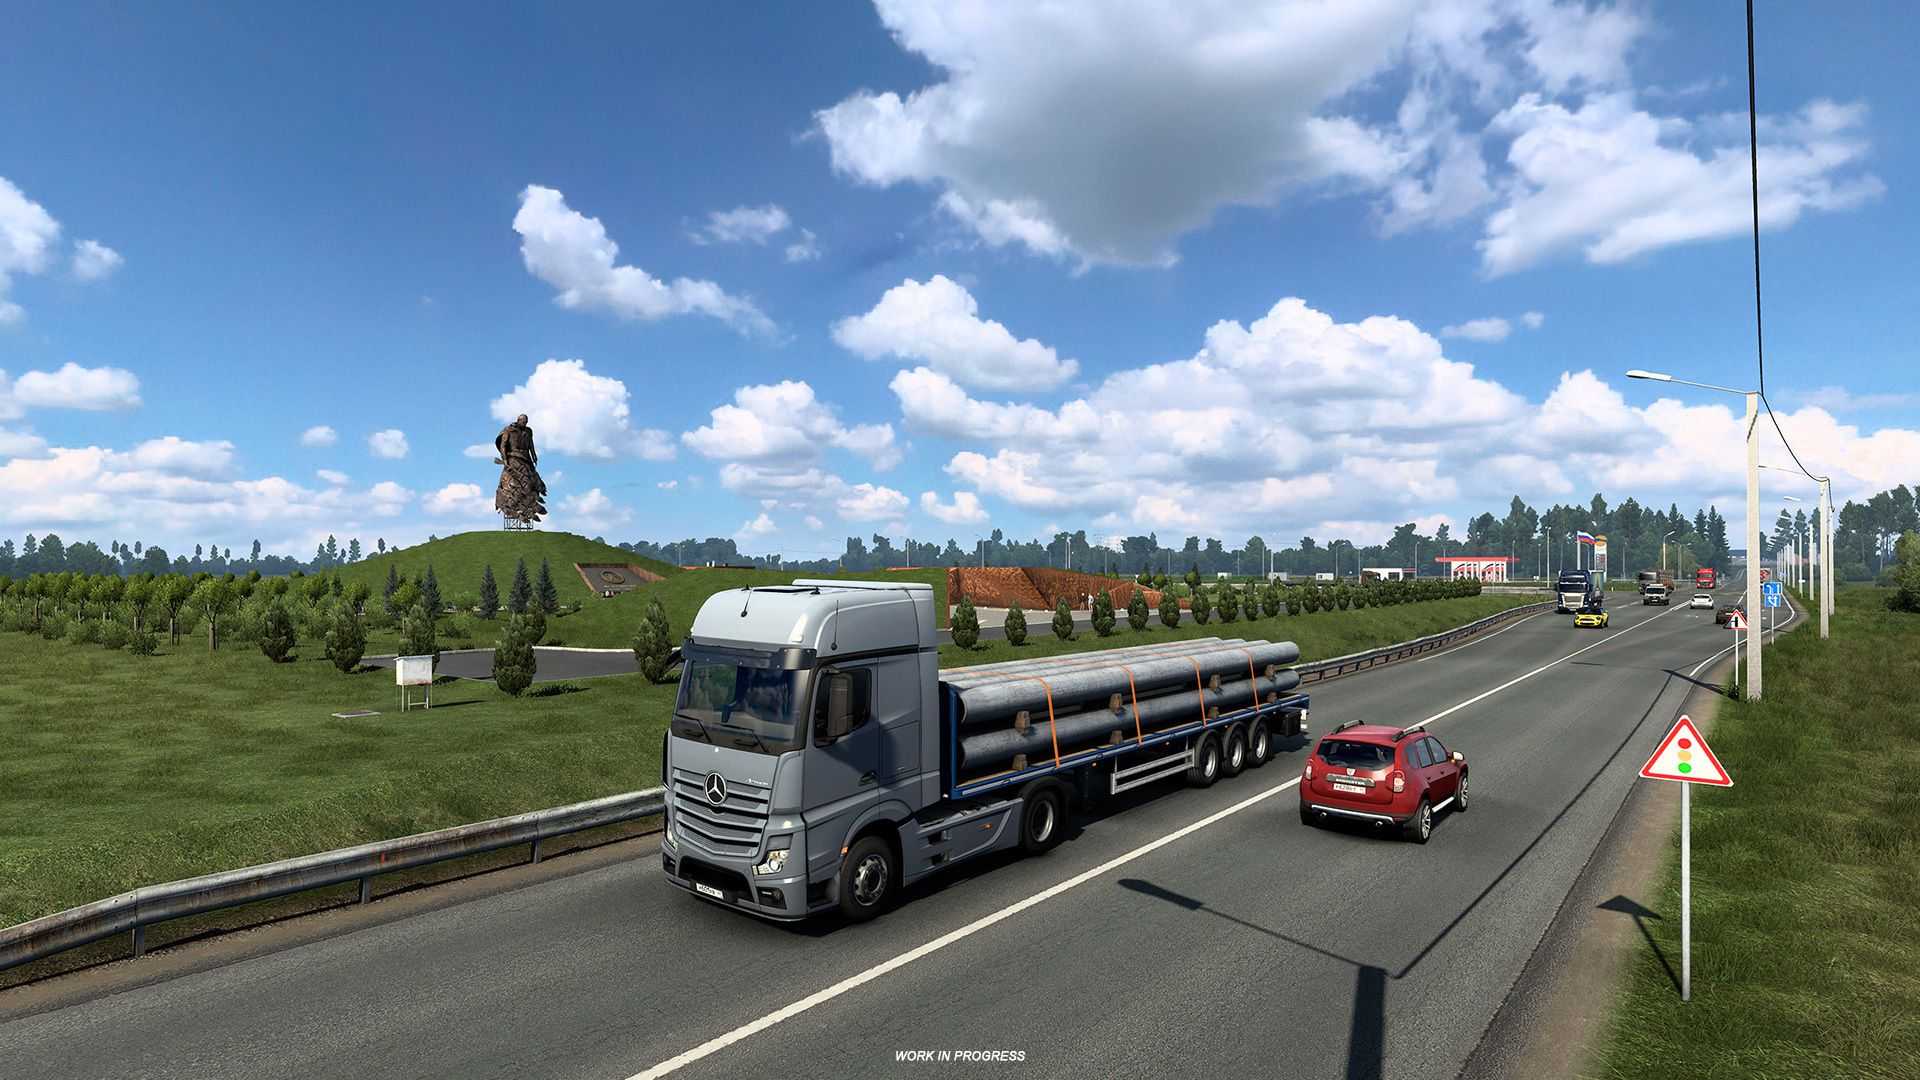 Euro truck simulator 2 получила обновление 1.49 с улучшенной графикой и новыми механиками